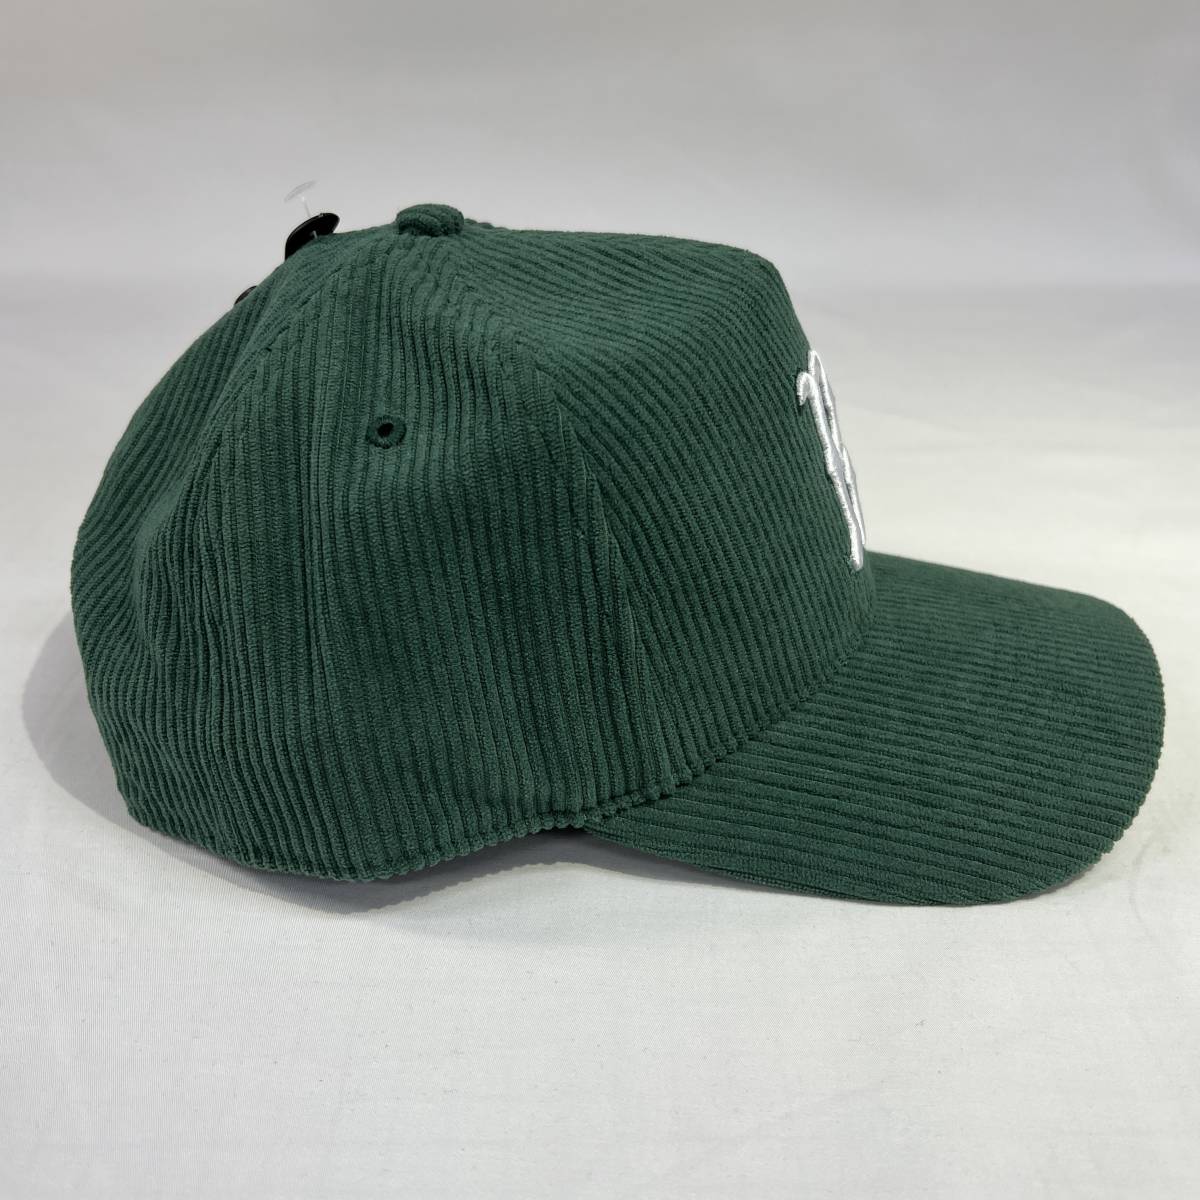 【新品】47 HITCH ボストン レッドソックス コーデュロイ グリーン Boston Red Sox Thick Corduroy Green キャップ 帽子_画像4